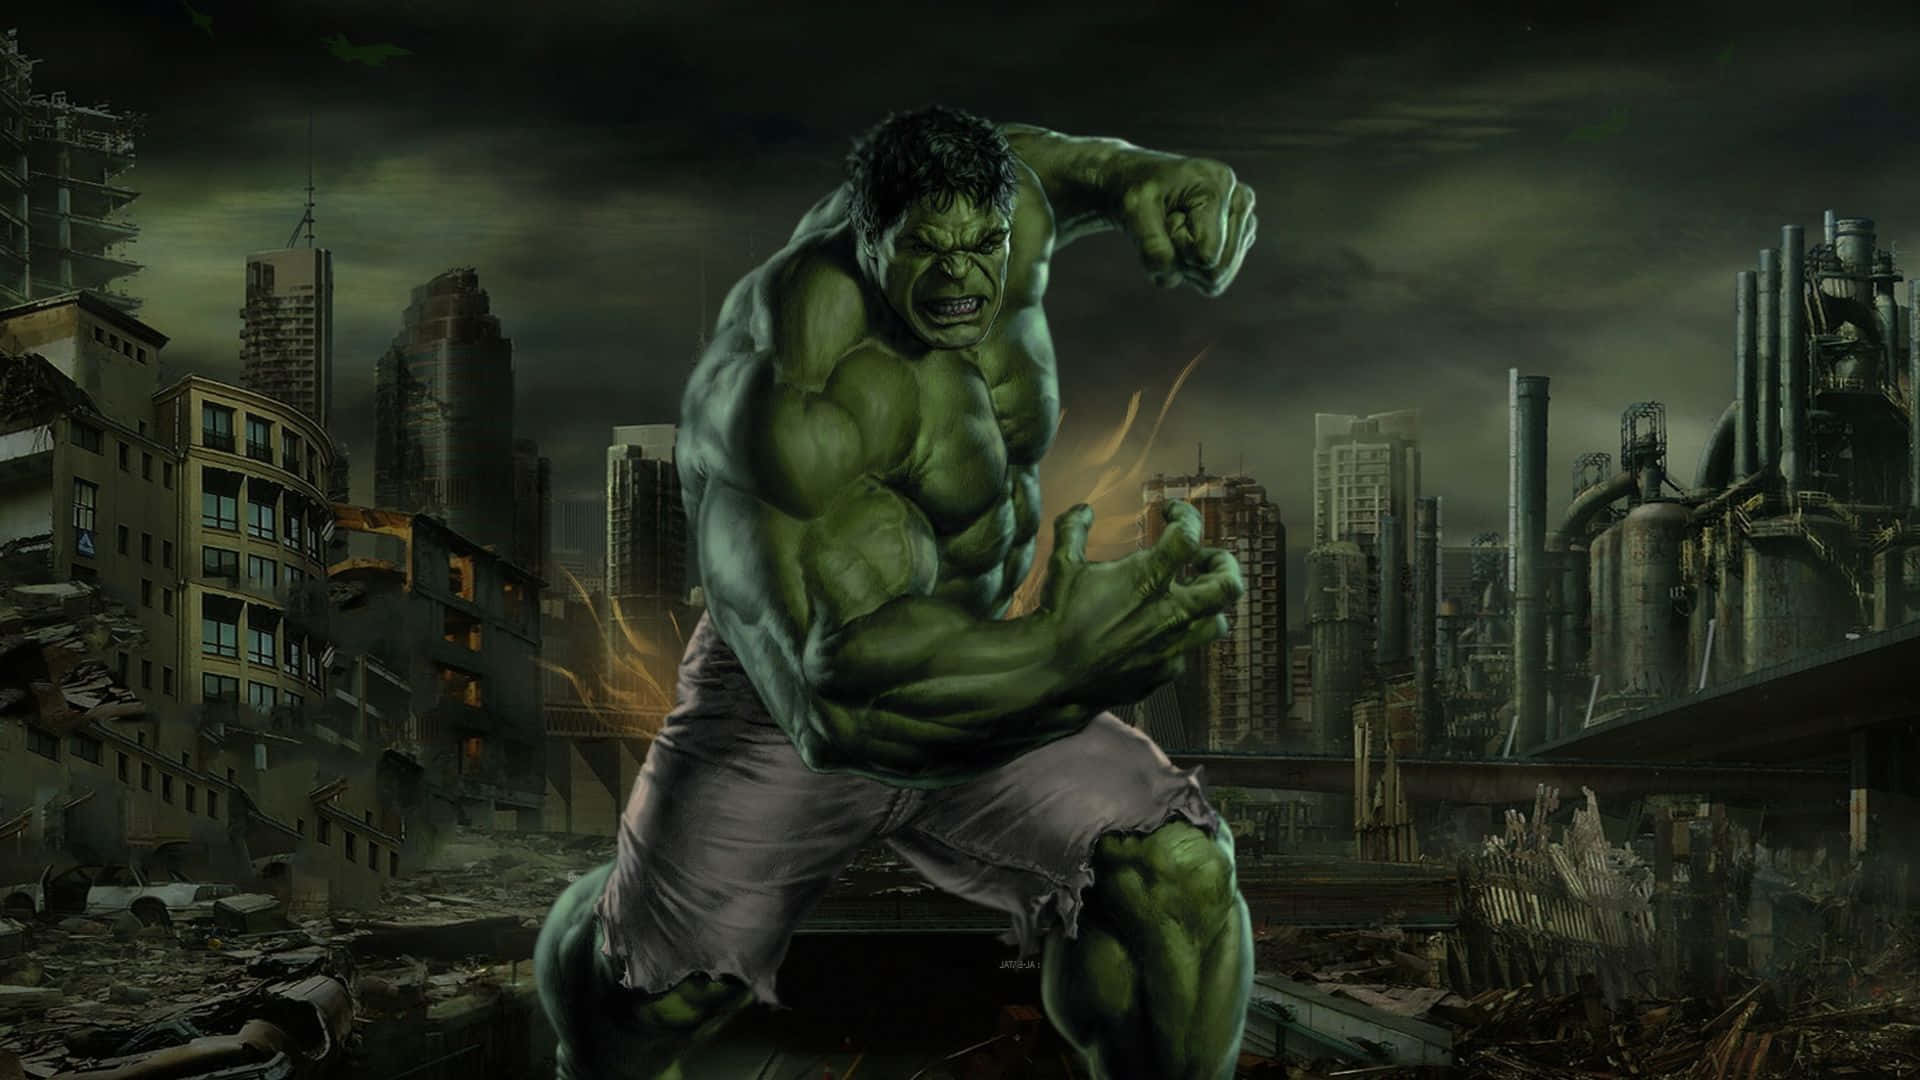 Einstandbild Aus Dem Marvel Cinematic Universe Film, Hulk